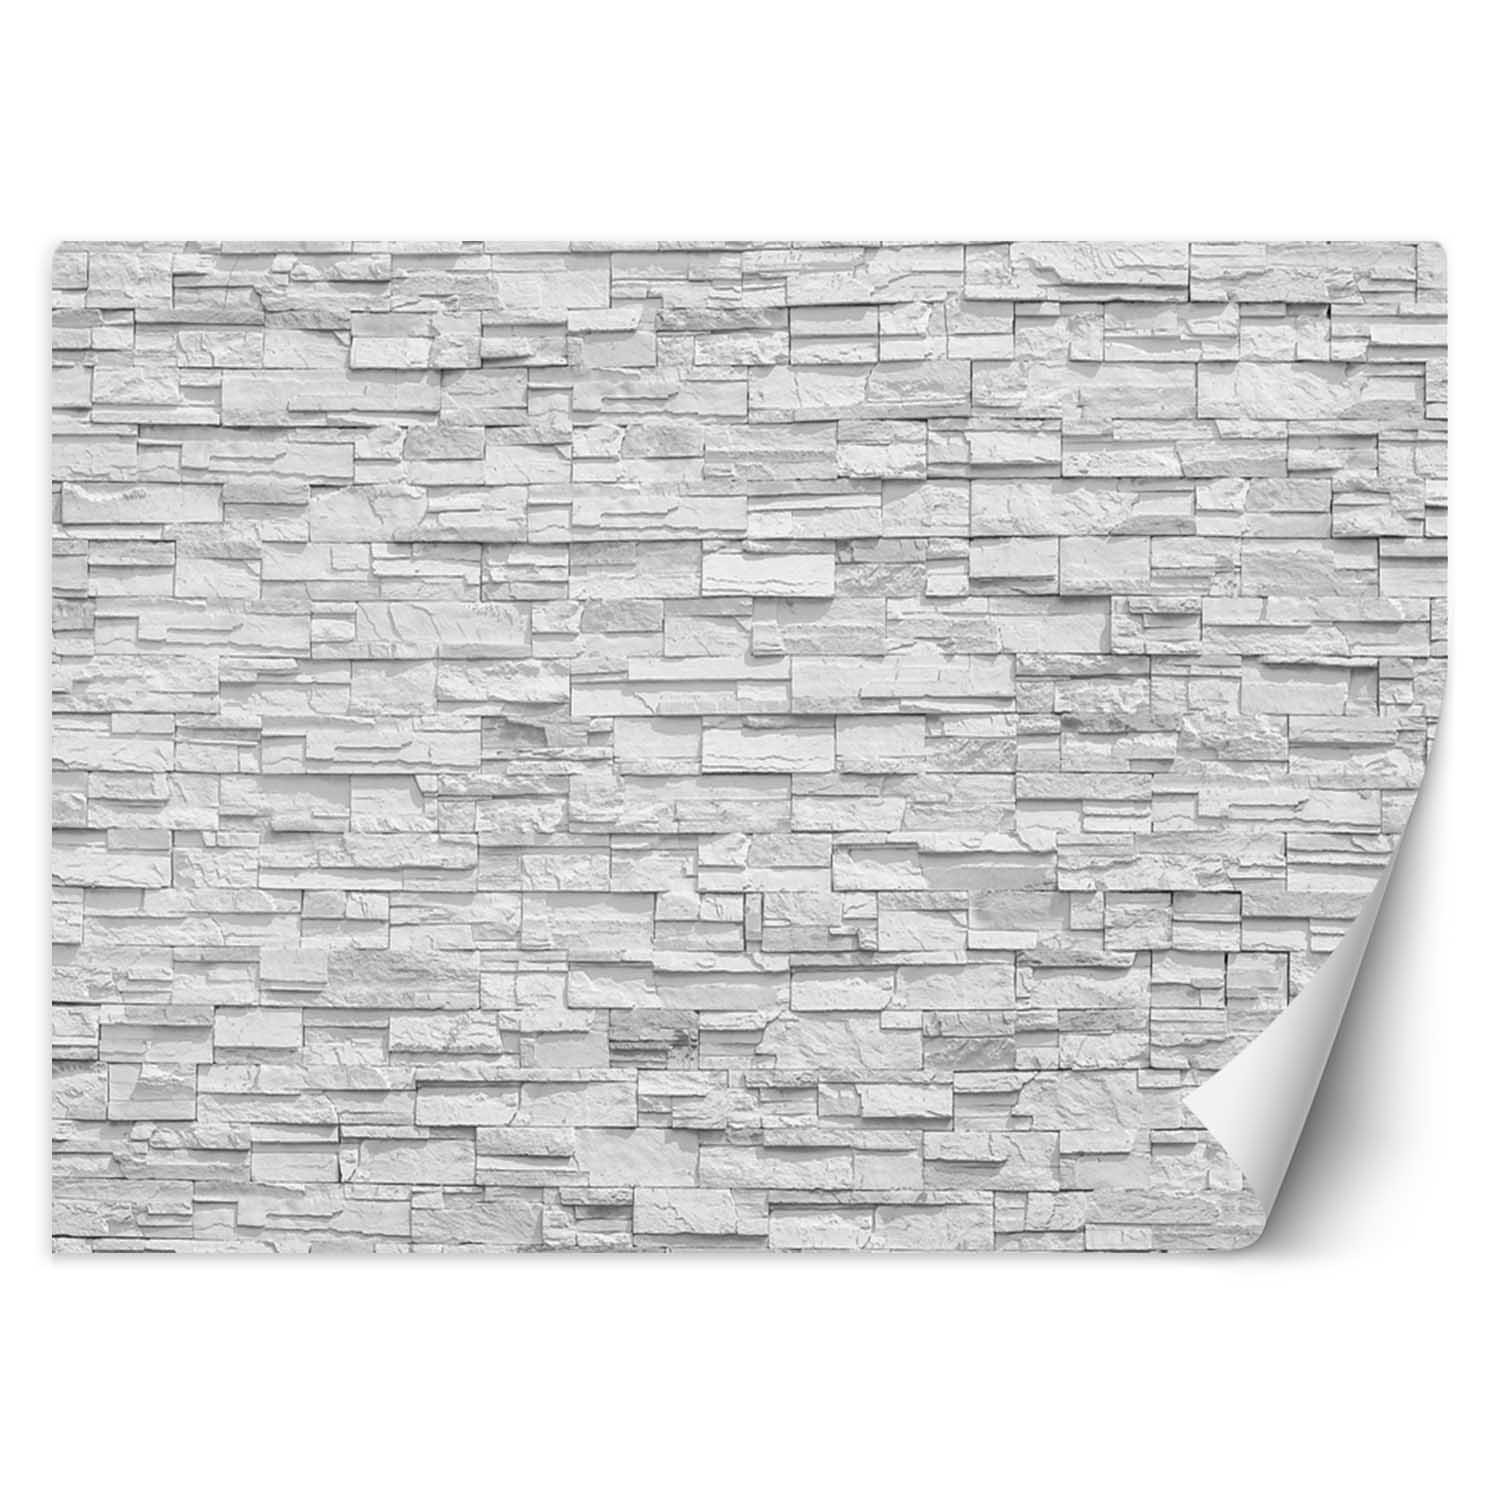 Trend24 – Behang – Witte Stenen Muur – Behangpapier – Behang Woonkamer – Fotobehang – 450x315x2 cm – Incl. behanglijm